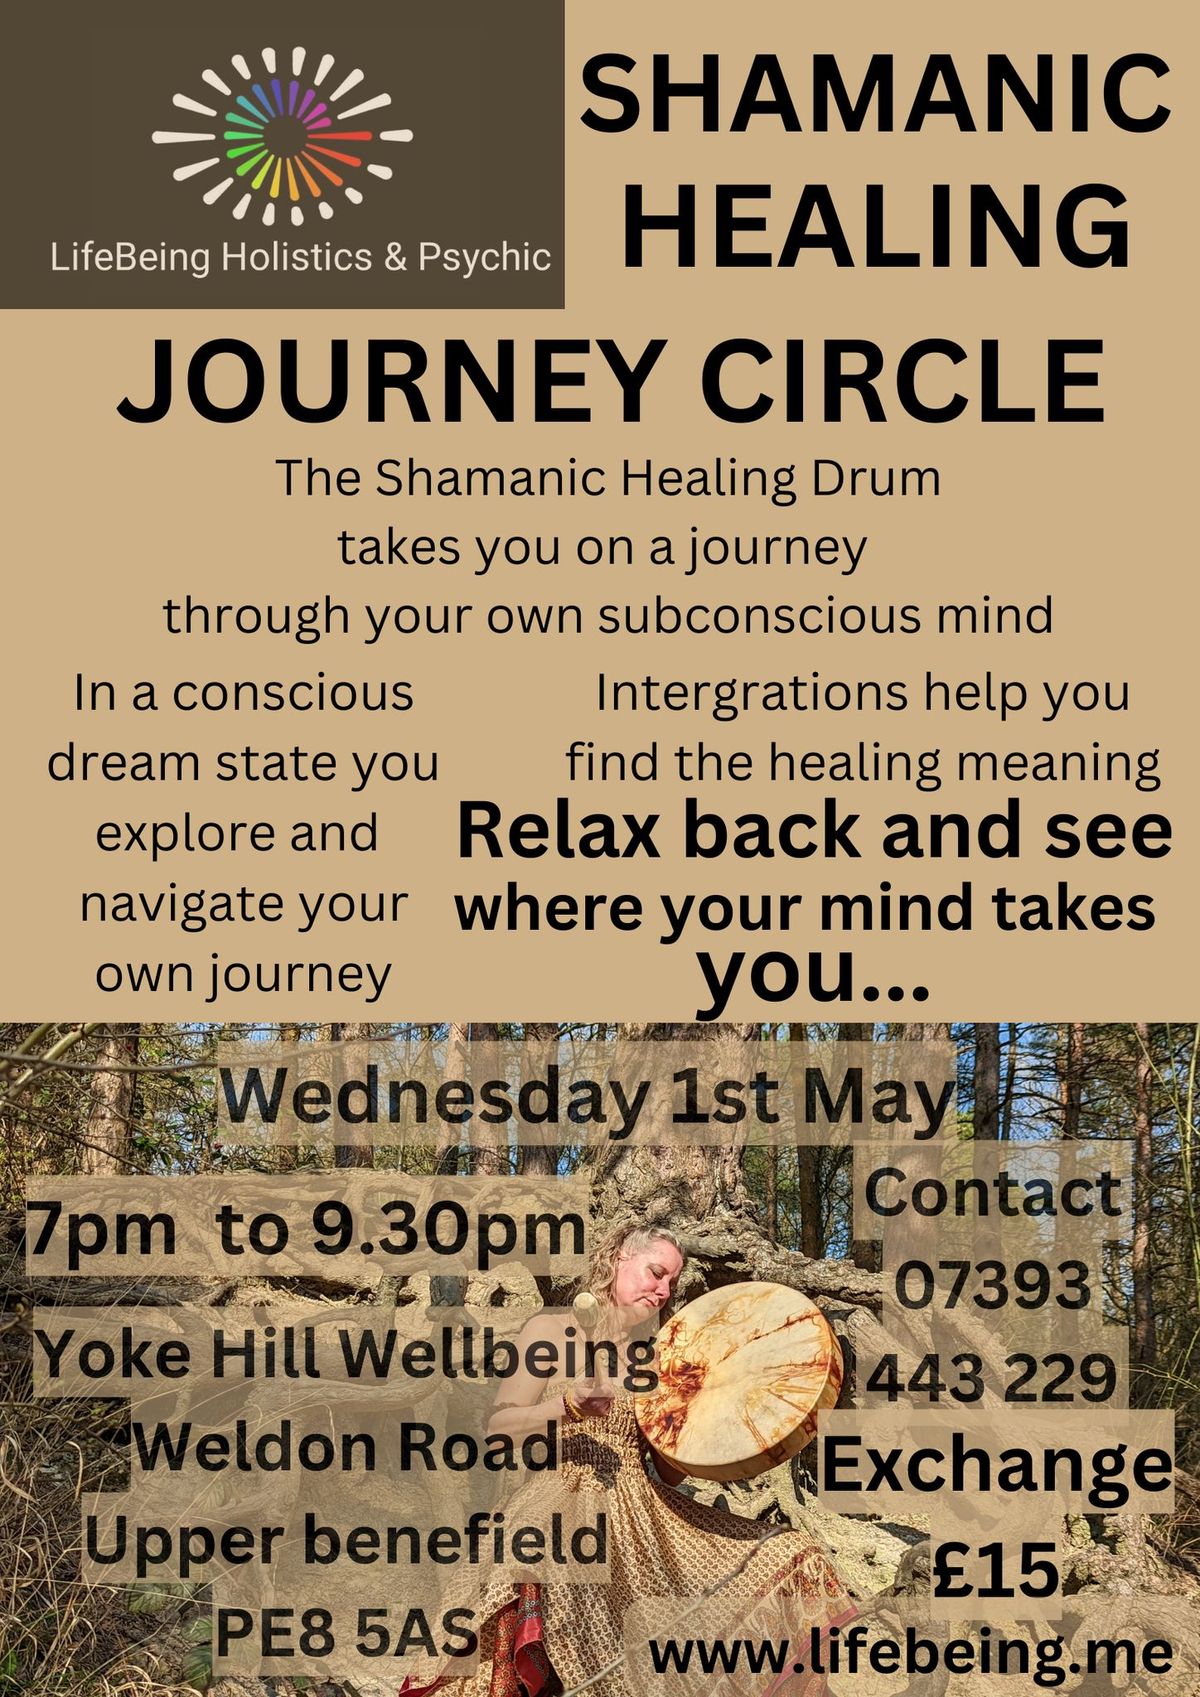 Shamanic Healing Drum Journey Circle